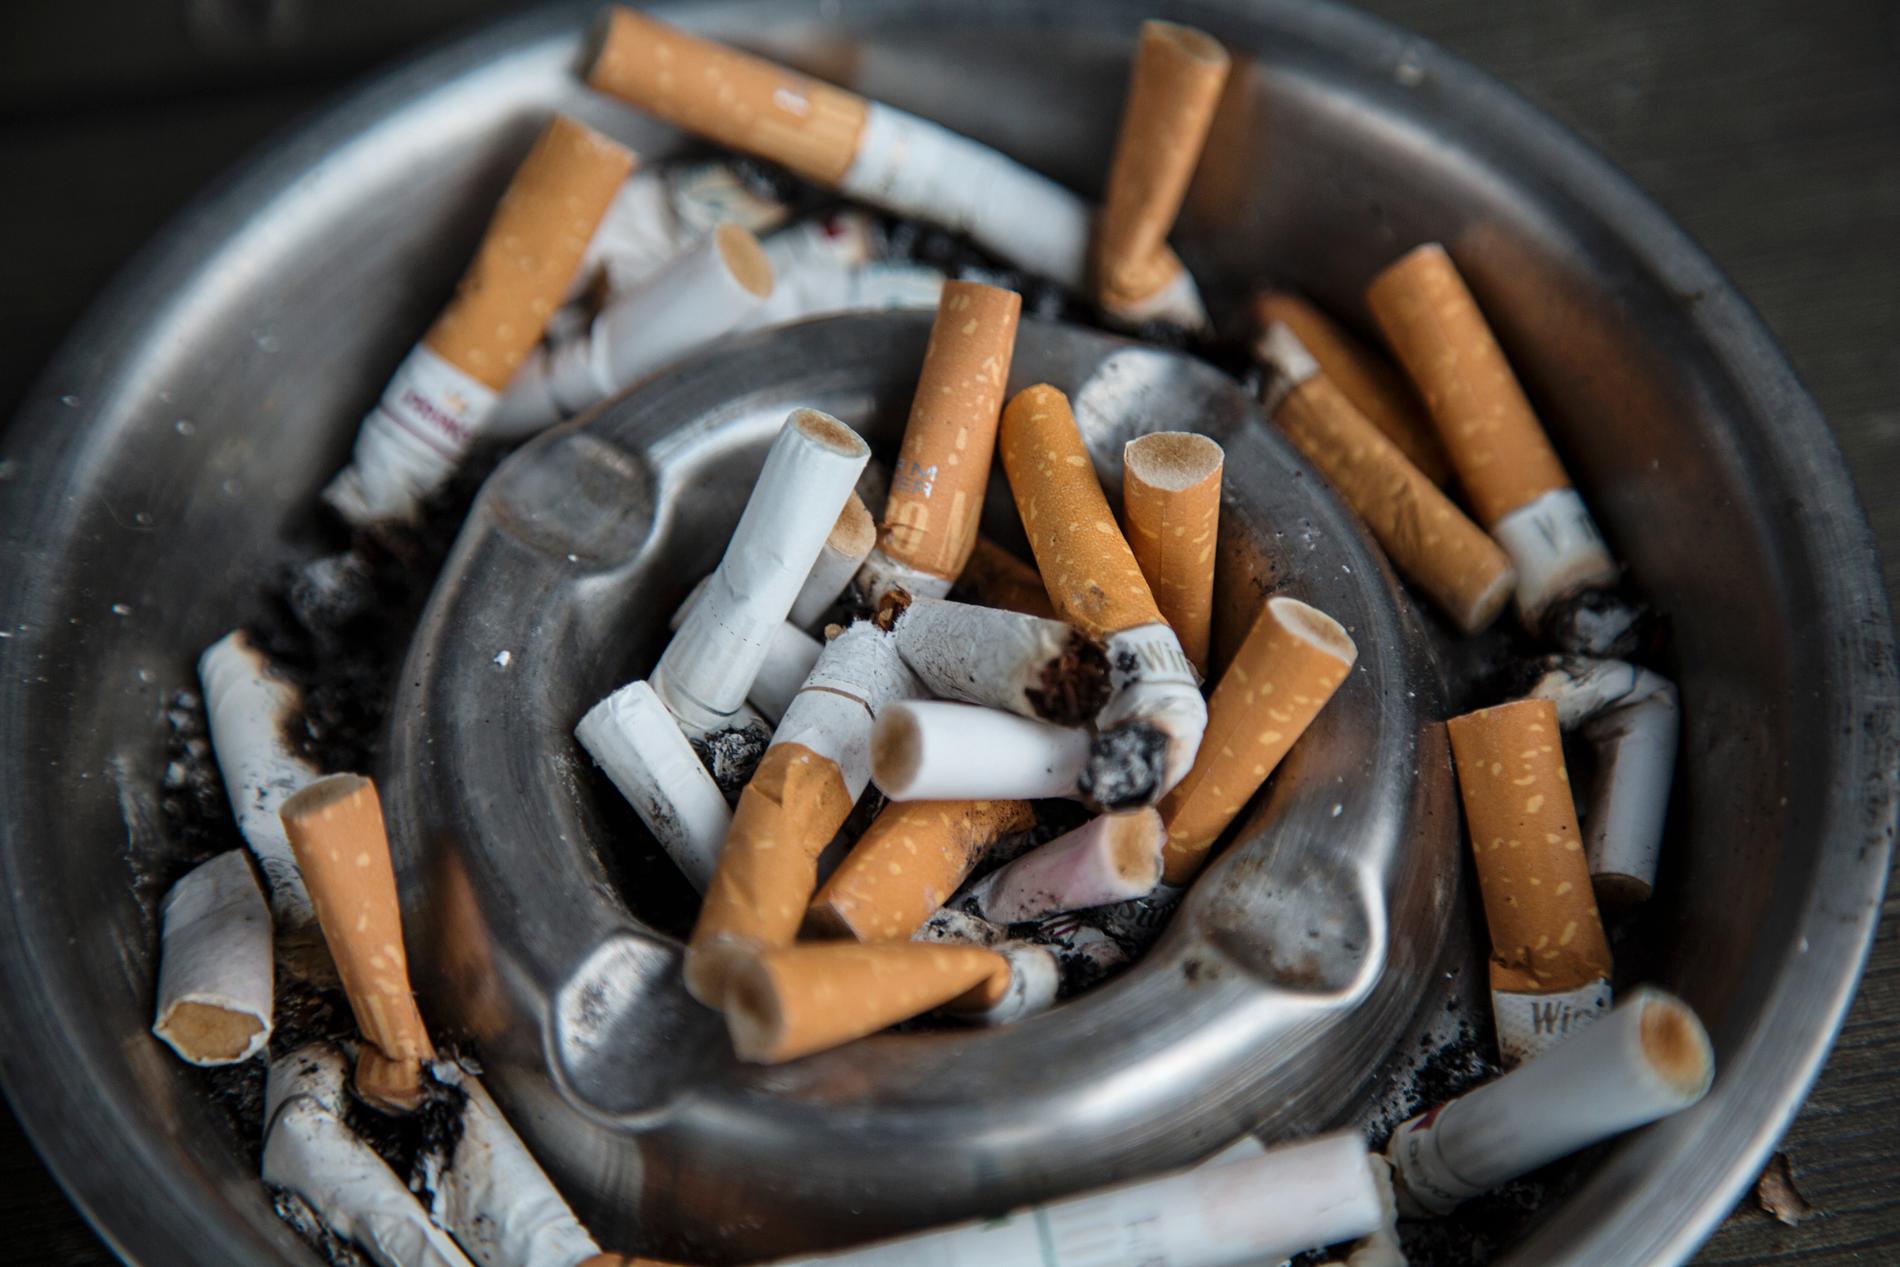 Priset på cigaretter skiljer sig mycket åt mellan EU-länderna. 